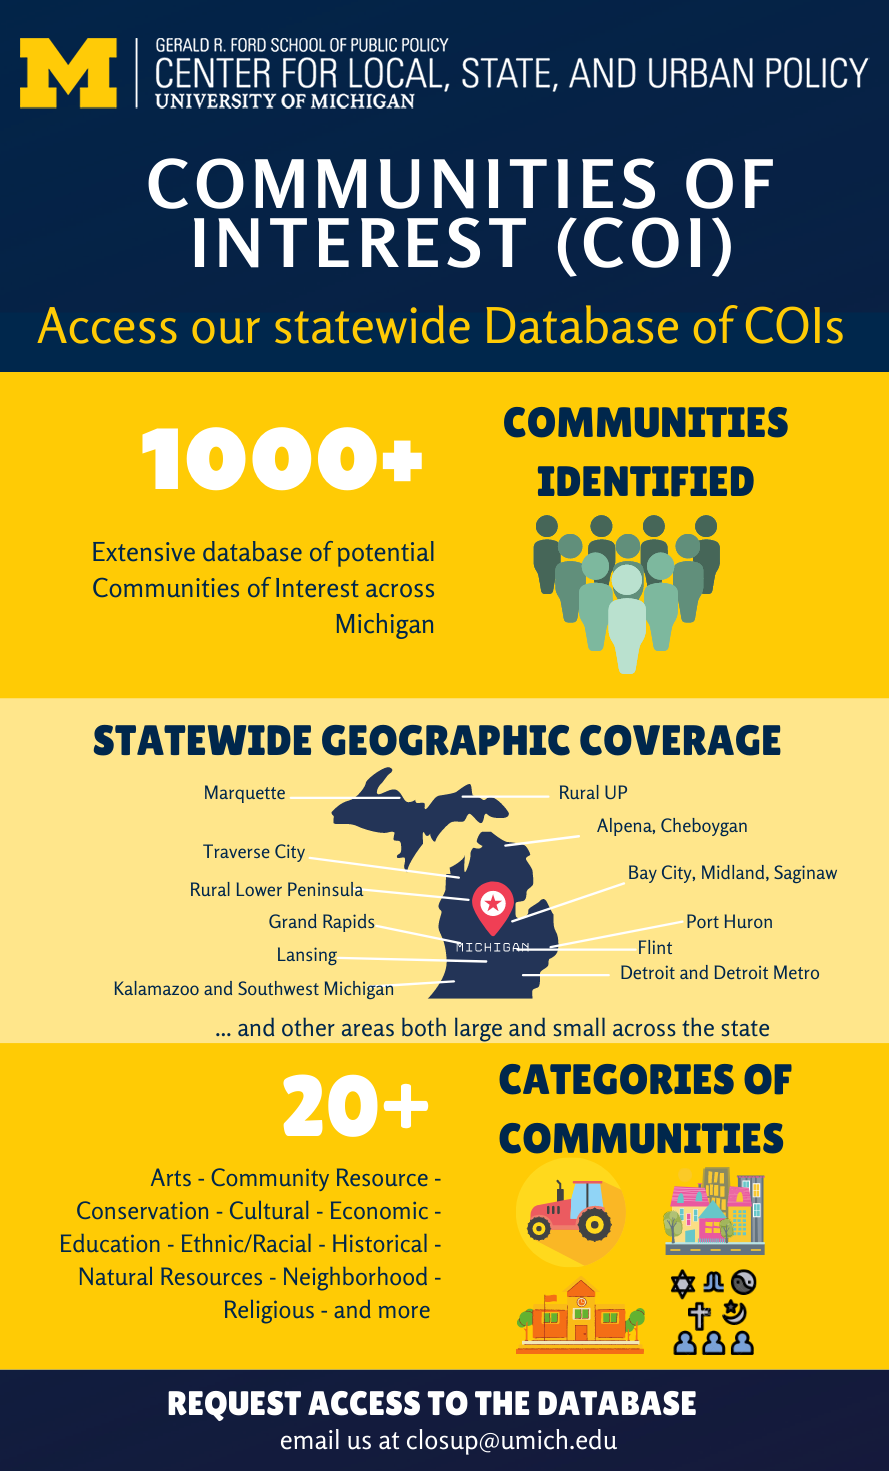 Infographic describing CLOSUP's Communities of Interest Database